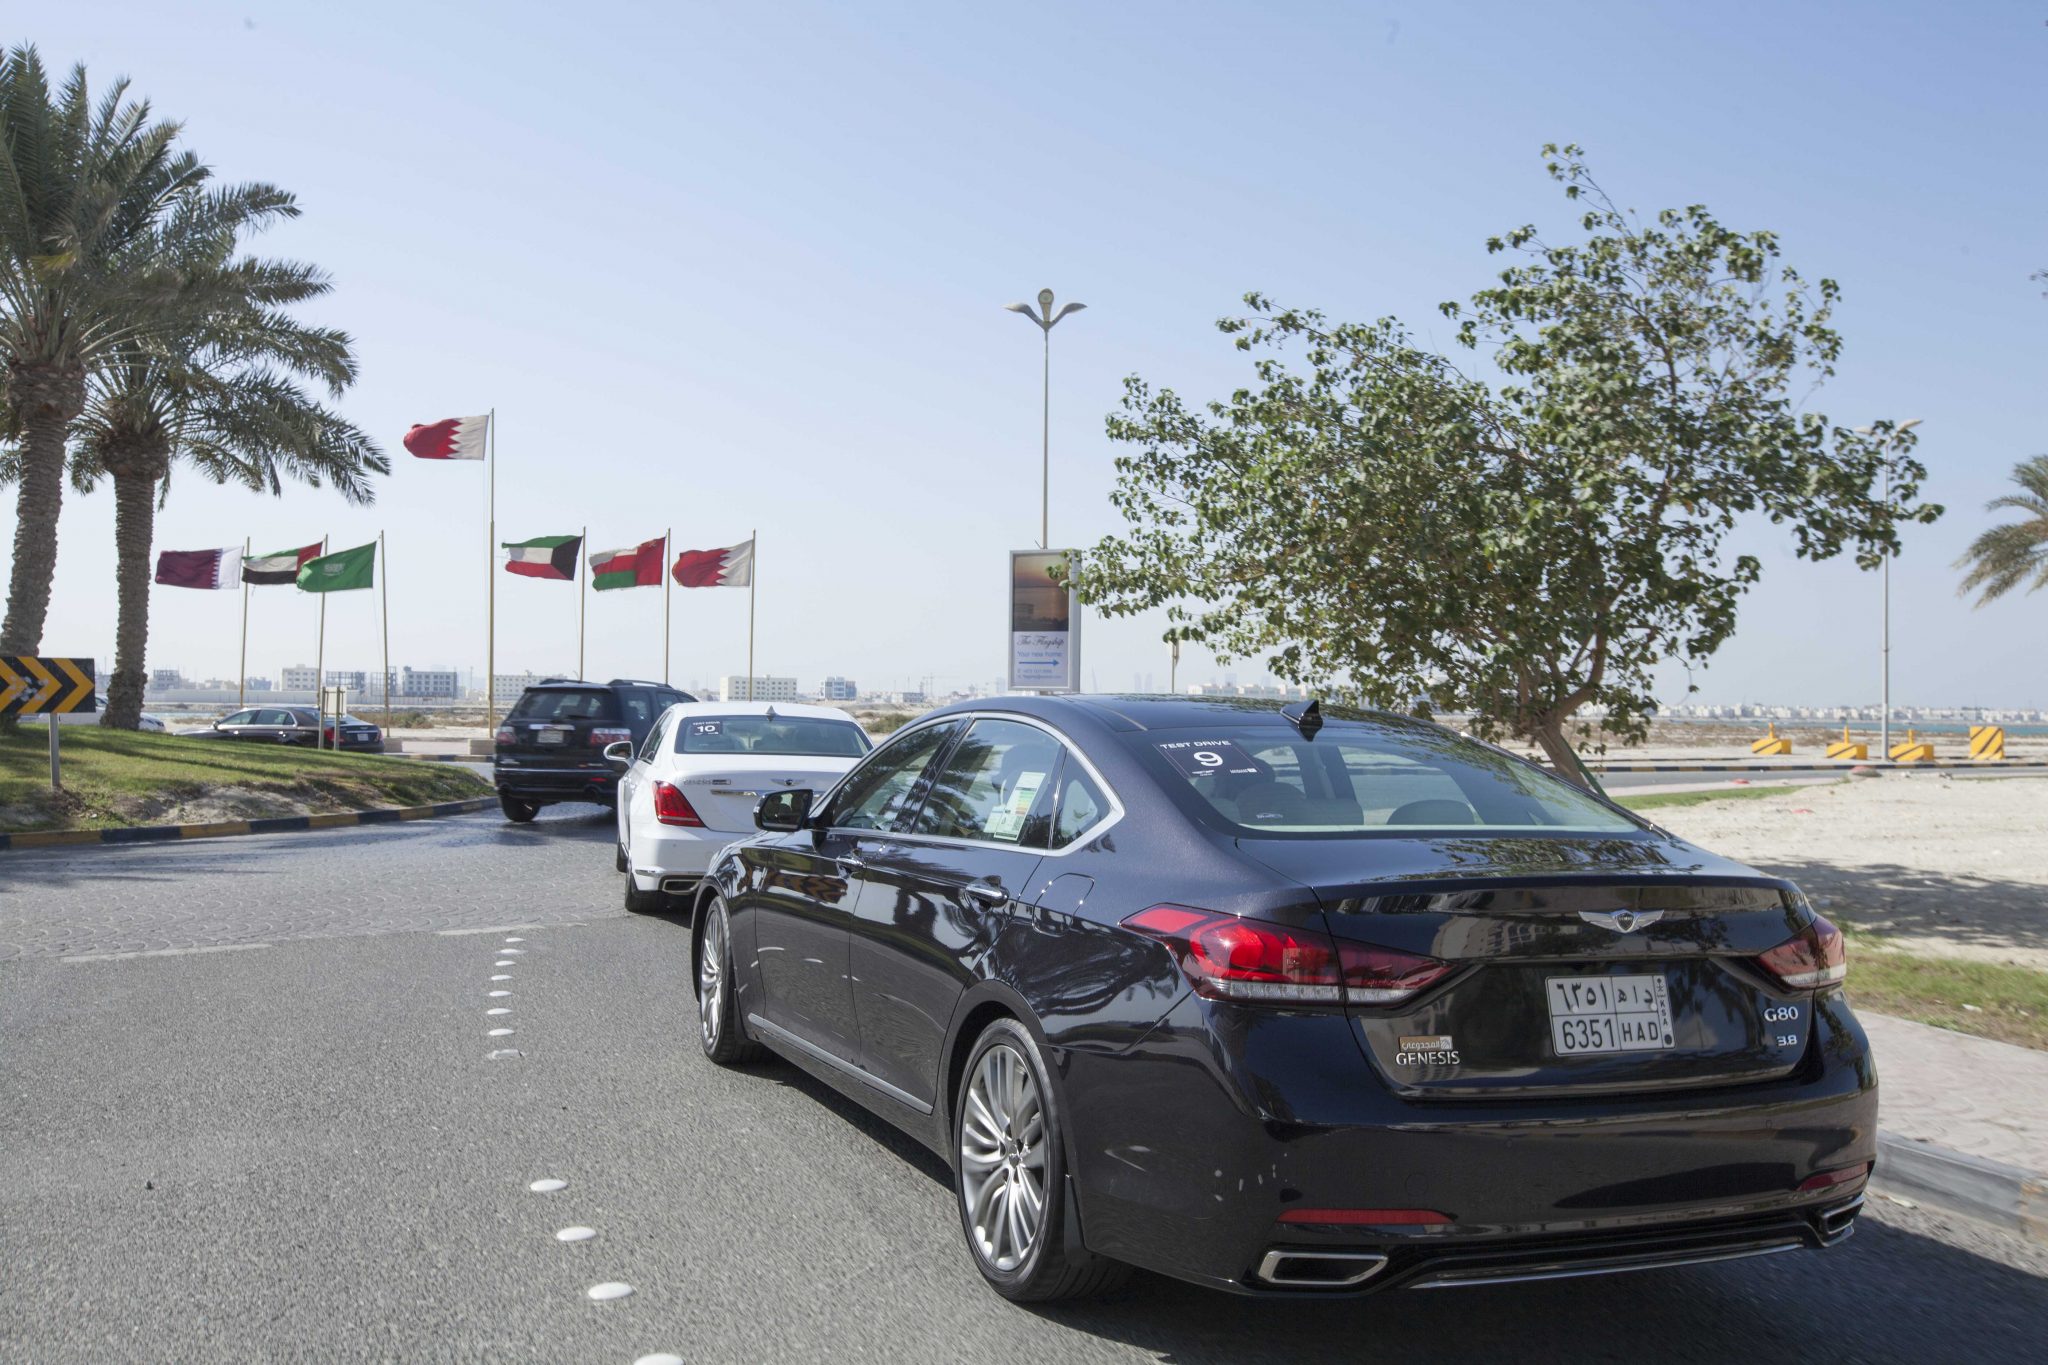 المجدوعي للسيارات تكرم عملائها وتنظم لهم رحلة مميزة الى مملكة البحرين 9